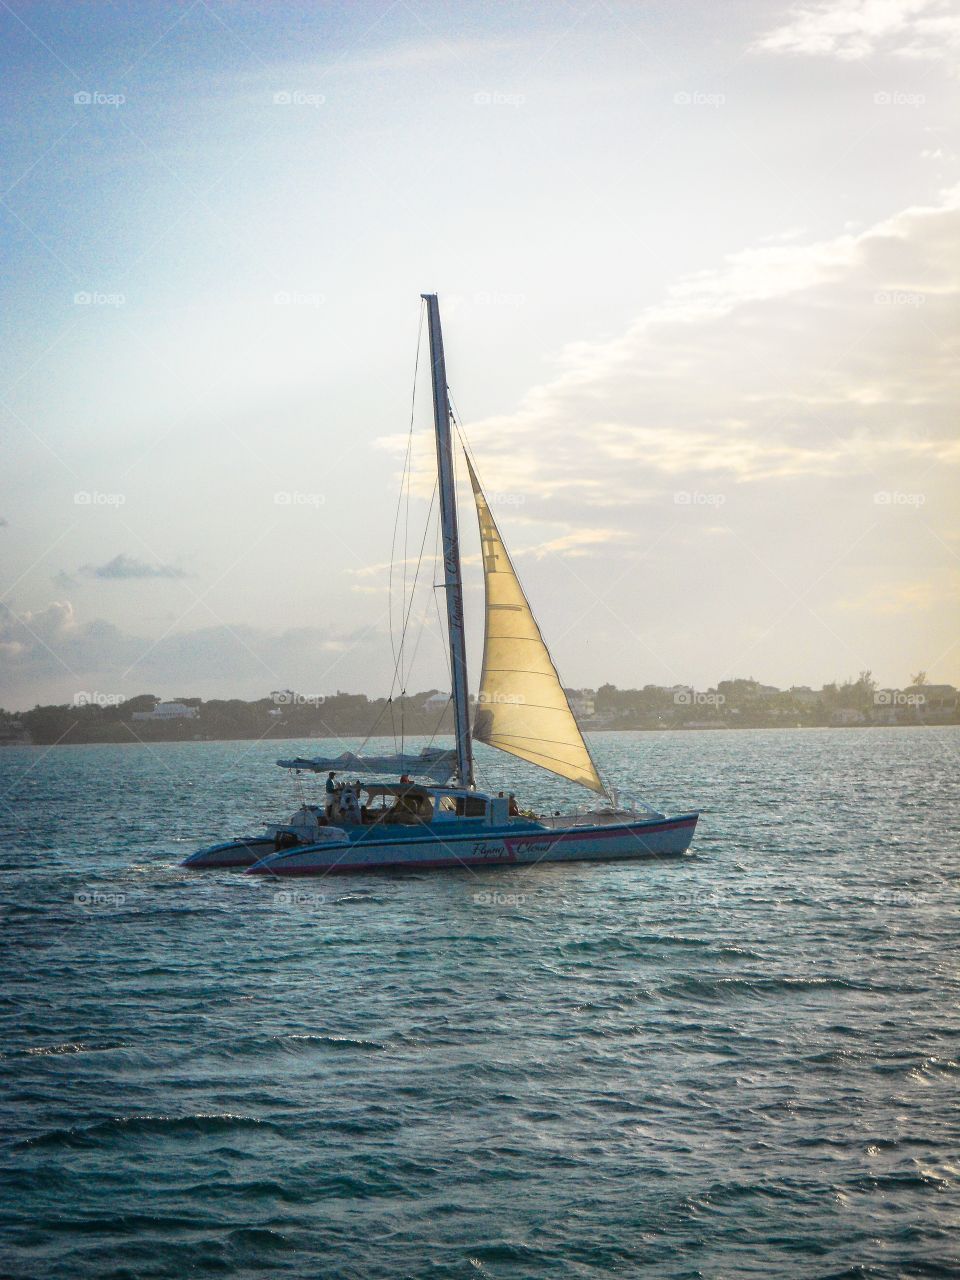 Sailing in the Bahamas